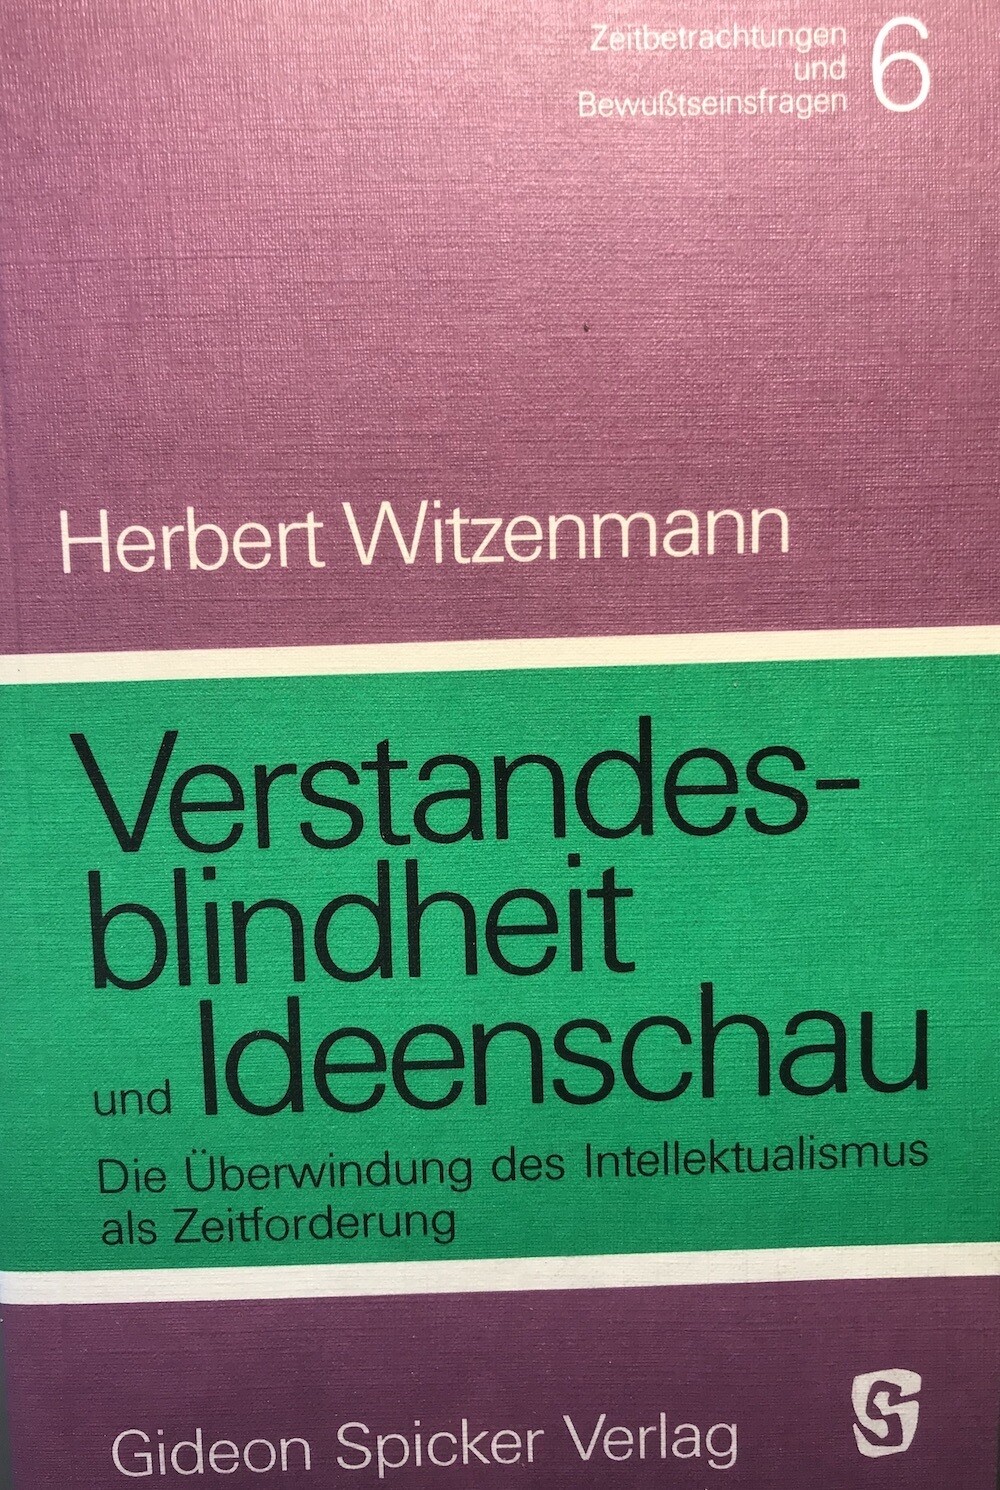 Herbert Witzenmann: Verstandesblindheit und Ideenschau (1985)